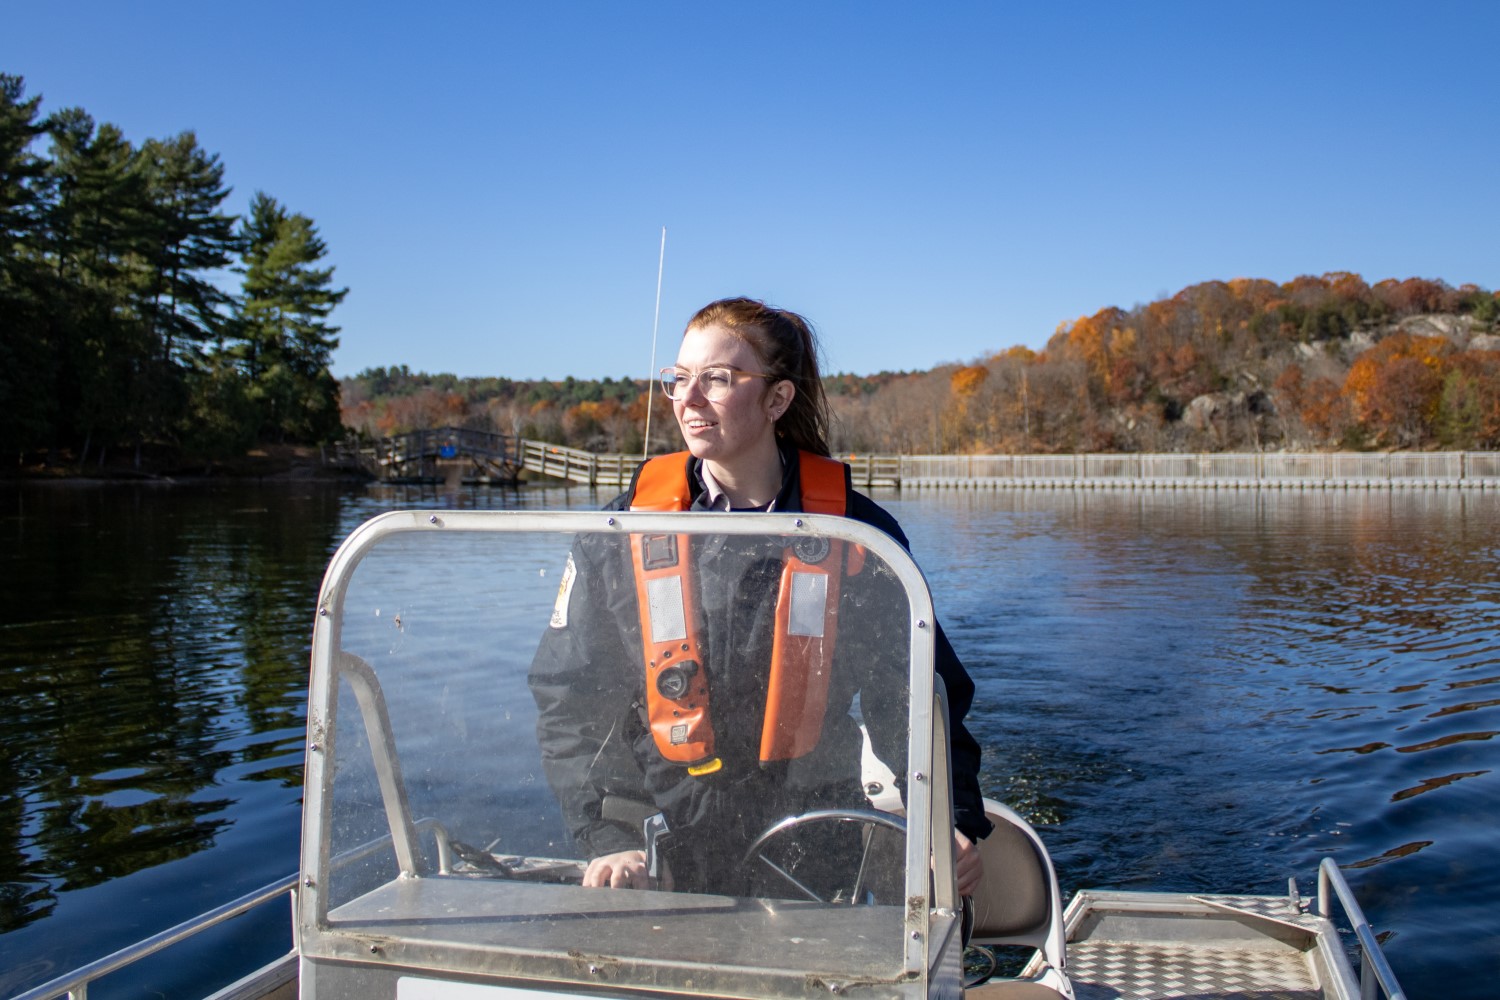 Une personne portant un VFI conduisant un petit bateau à moteur dans un lac, avec une forêt aux couleurs d'automne derrière elle.